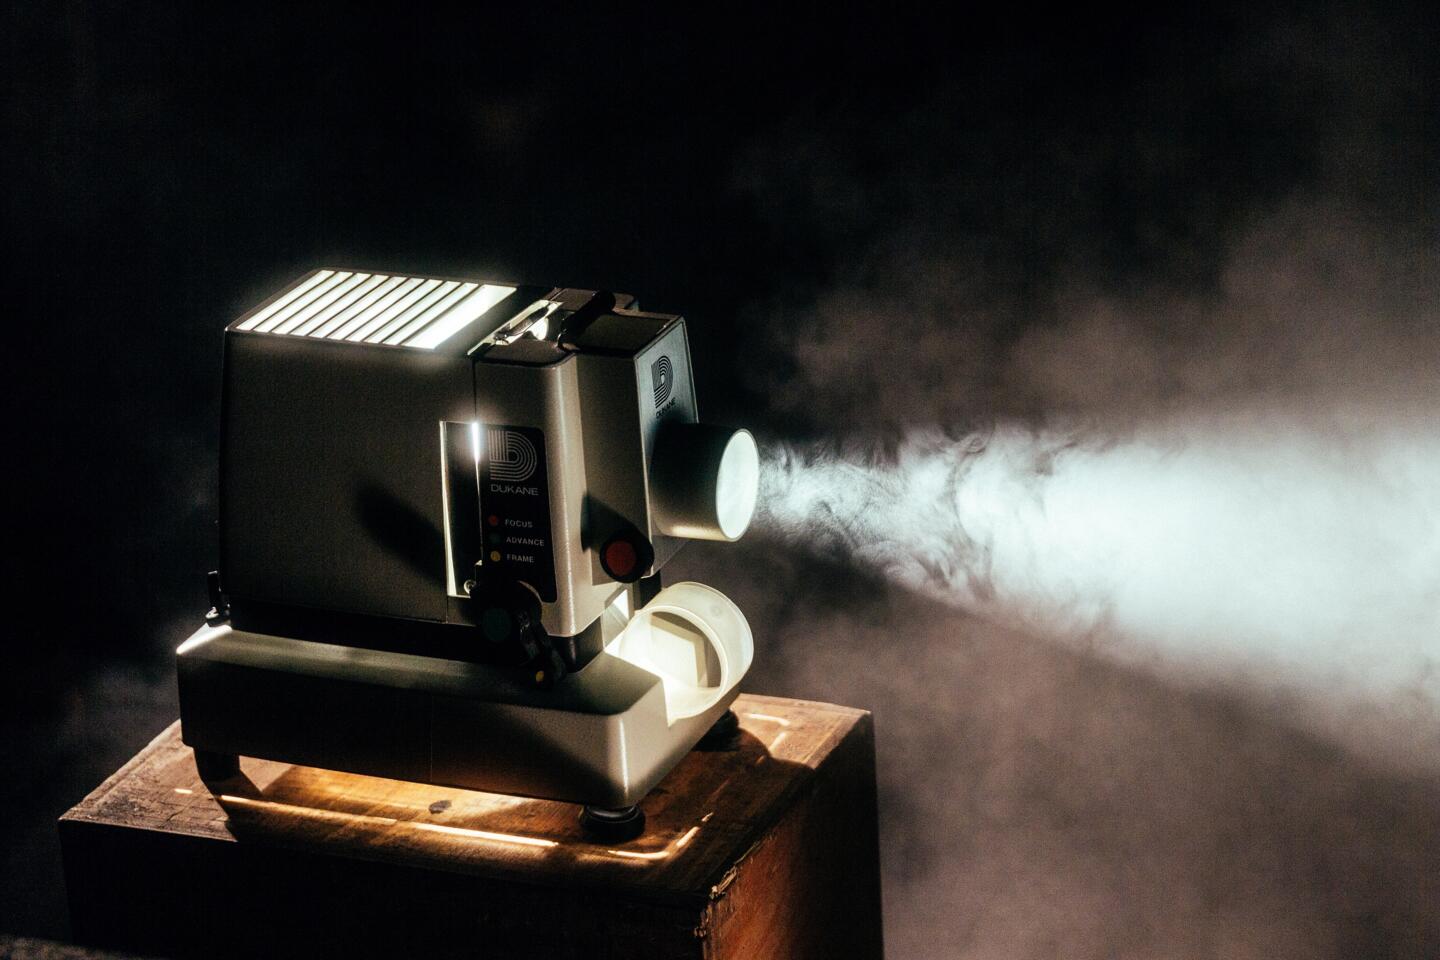 Proyector de cine vintage emitiendo un haz de luz a través de humo atmosférico, capturando el ambiente nostálgico en el Festival de Cine Francófono de Angulema.